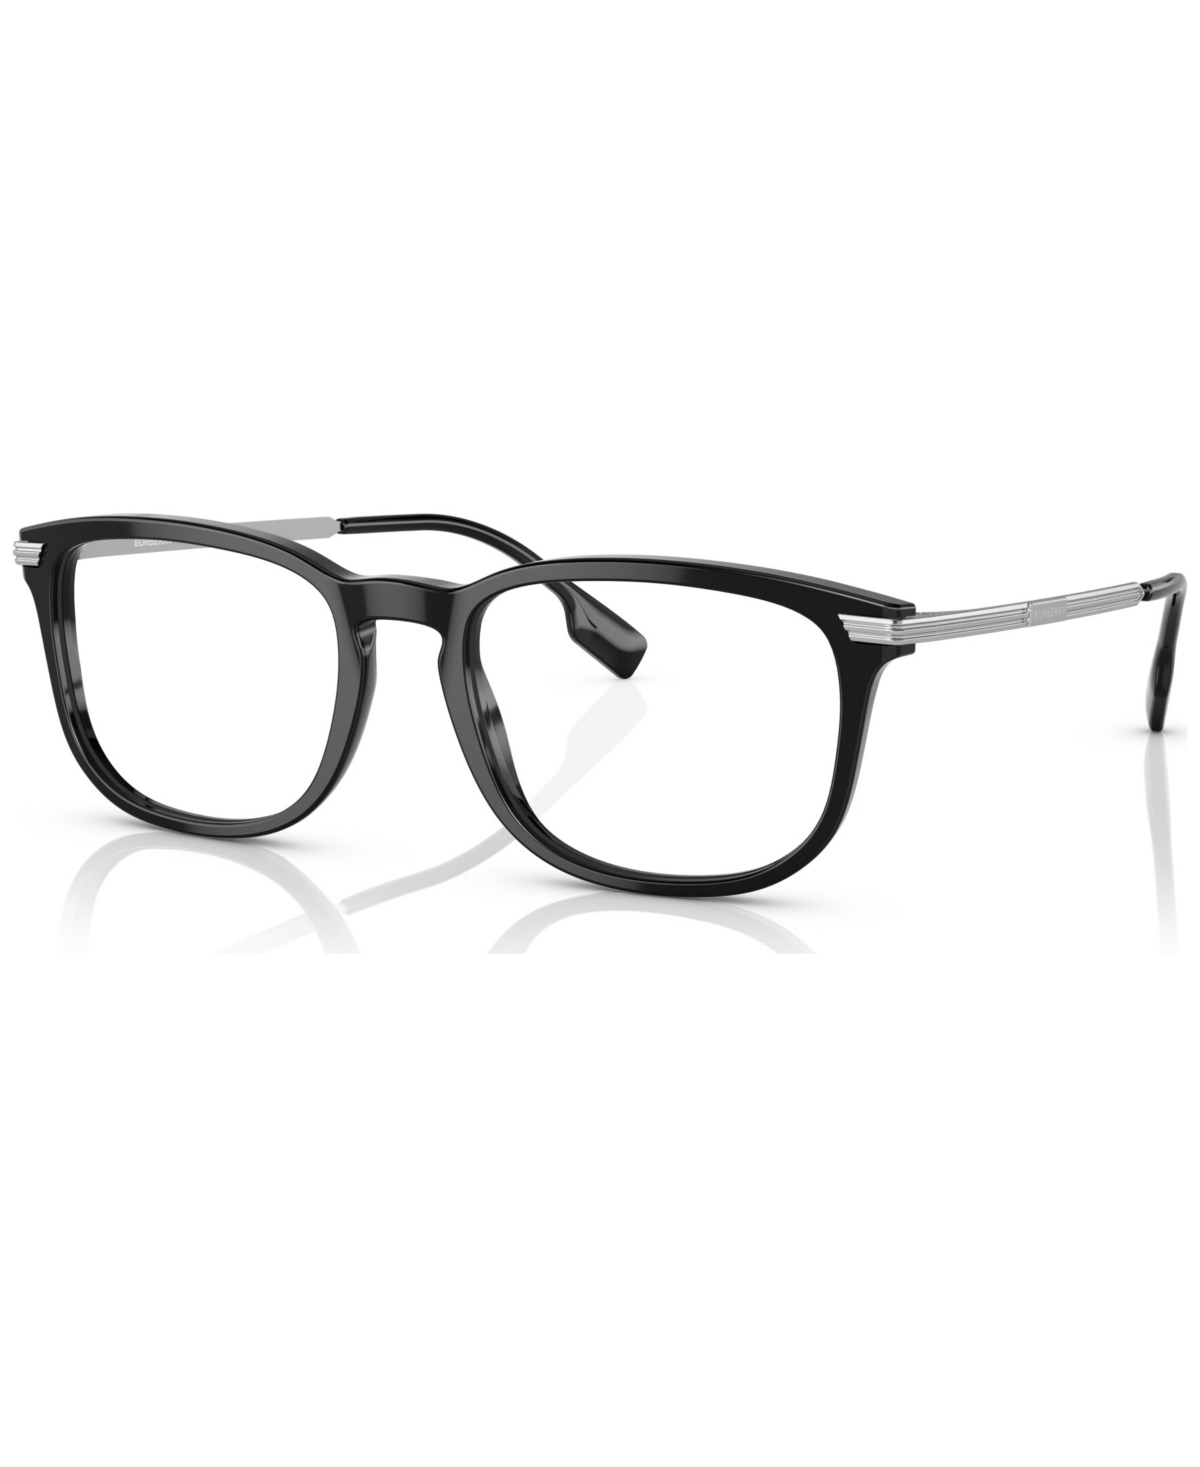 Men's Rectangle Eyeglasses, BE236956-o - Black